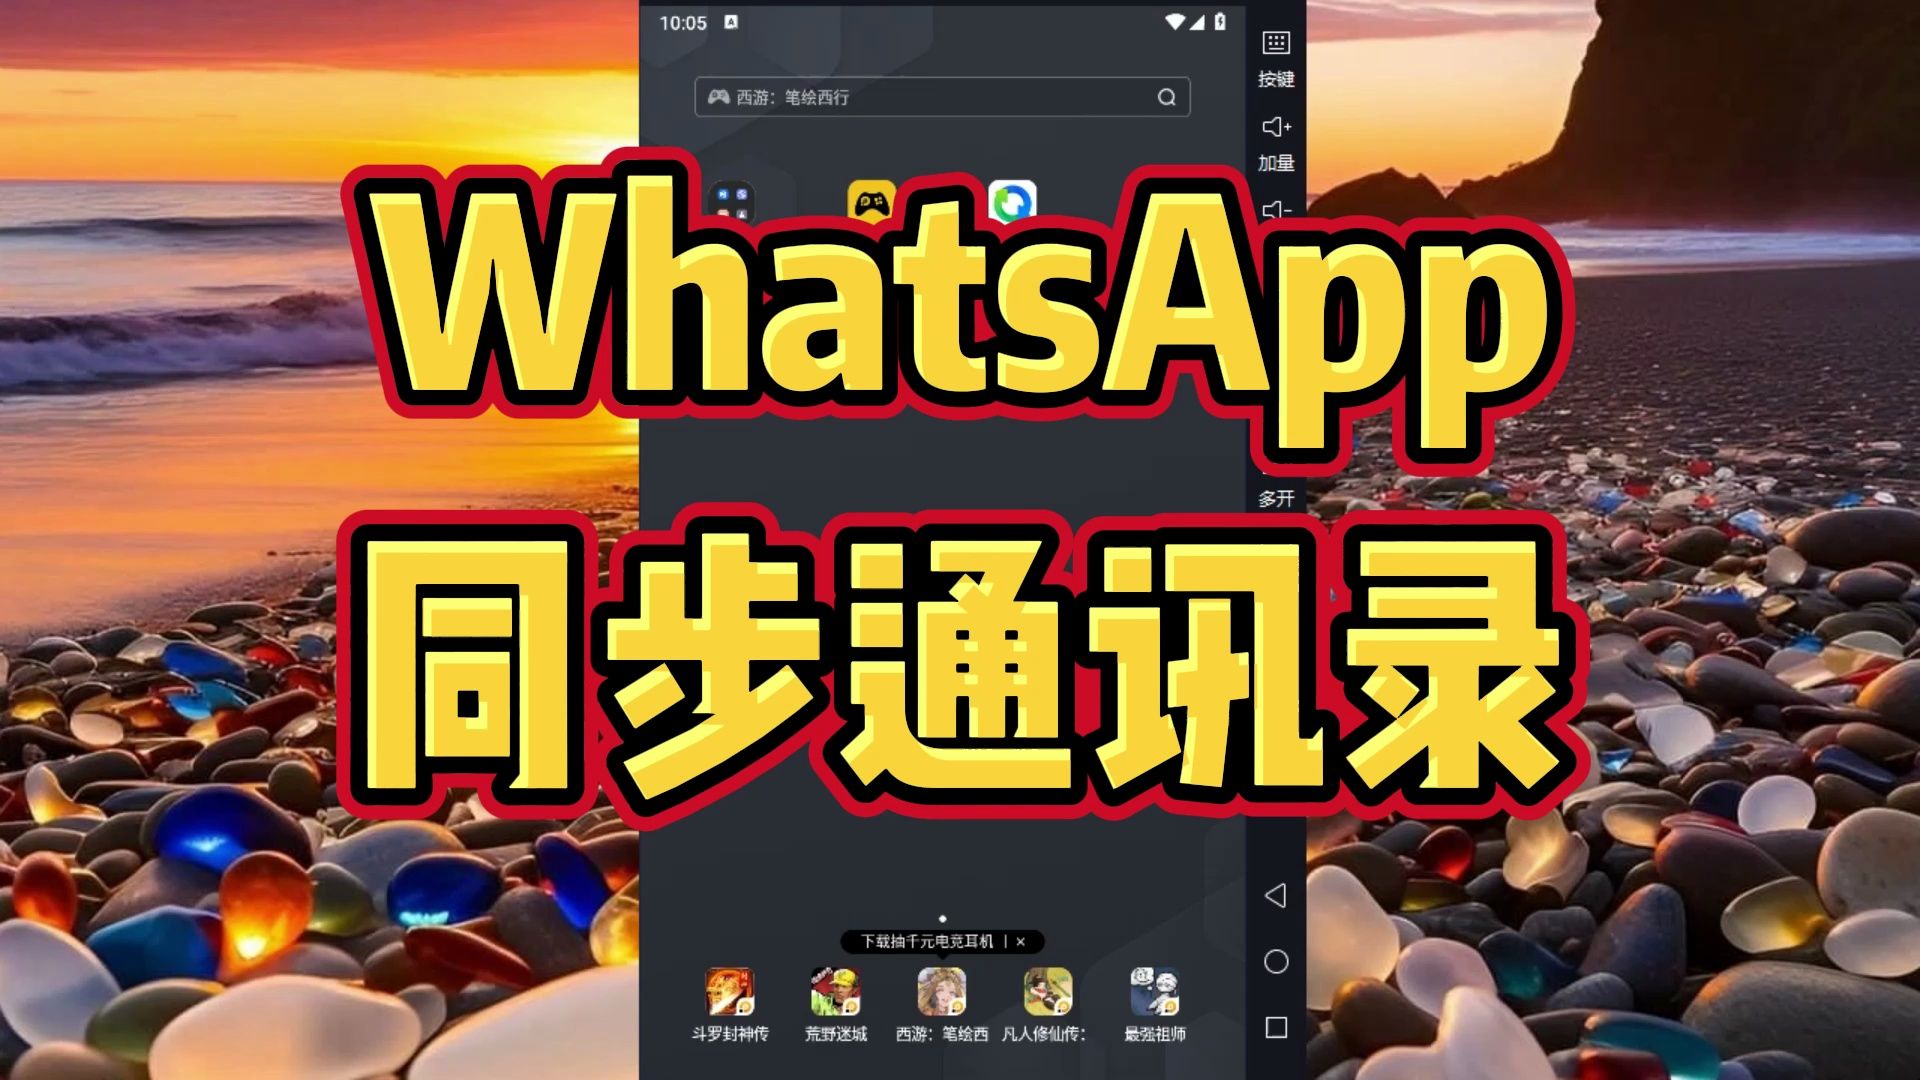 中文版手机电子琴软件下载_中文版手机电子琴安装_whatsapp中文手机版